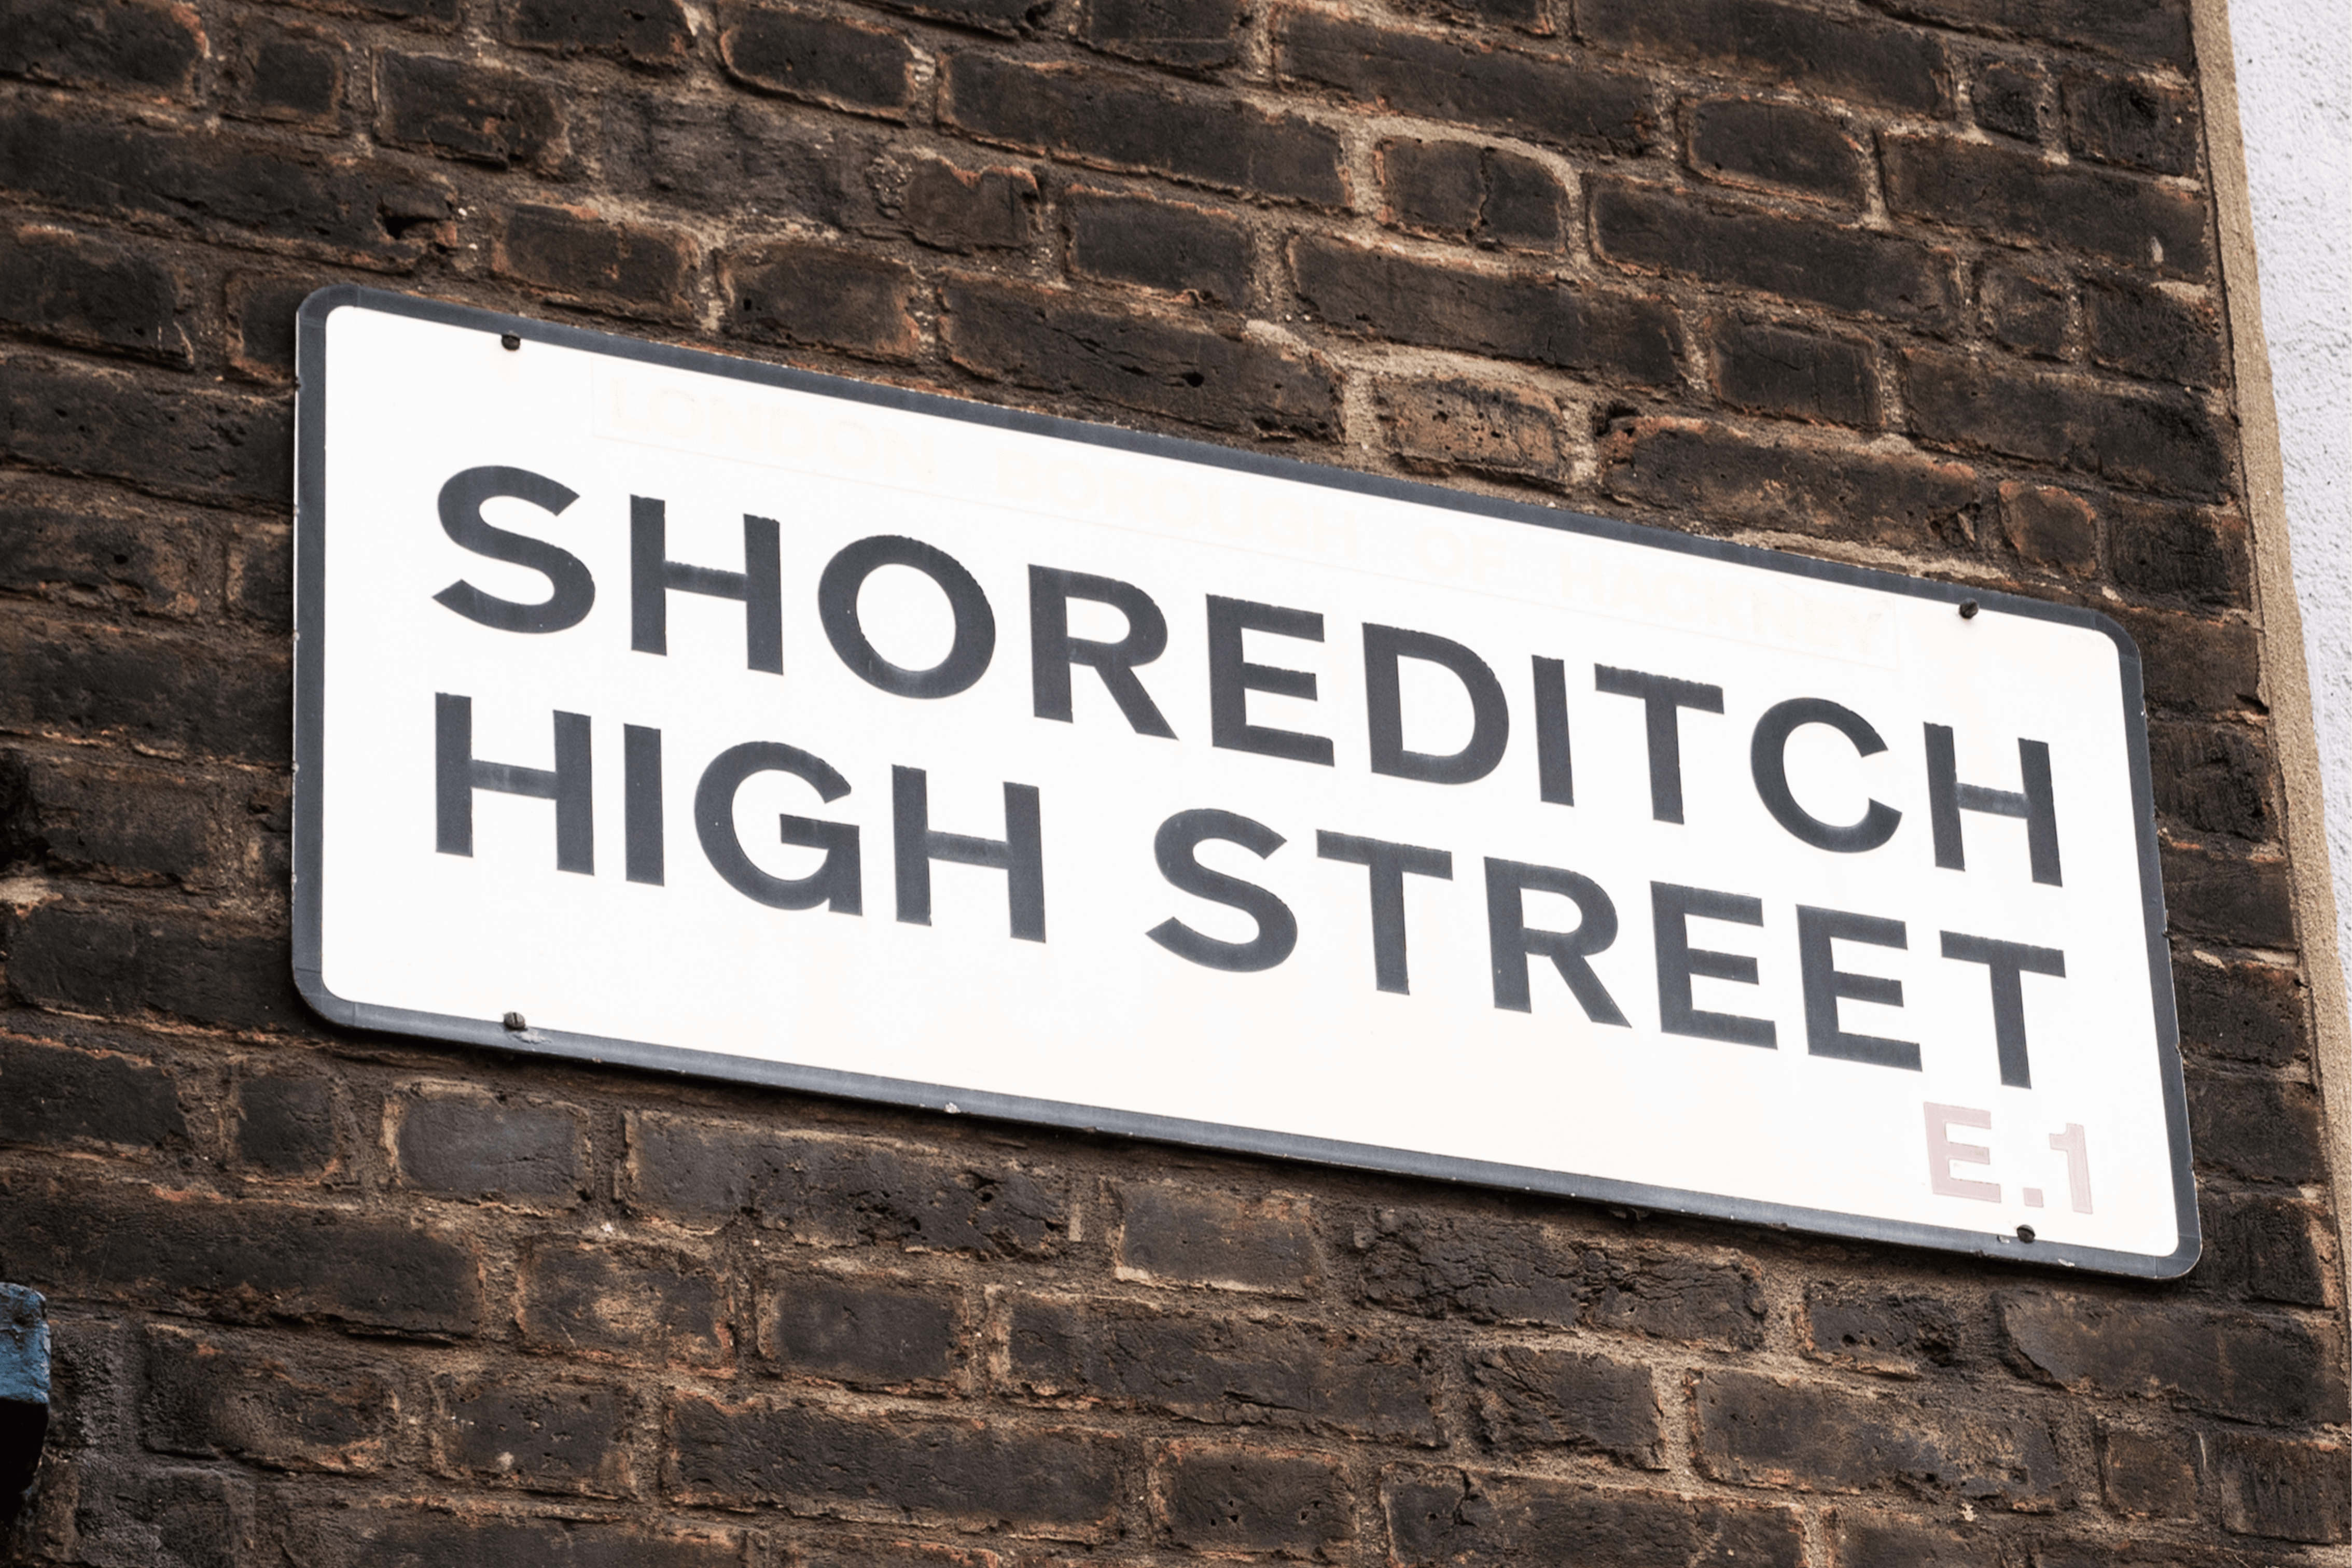 Shoreditch high Street sign